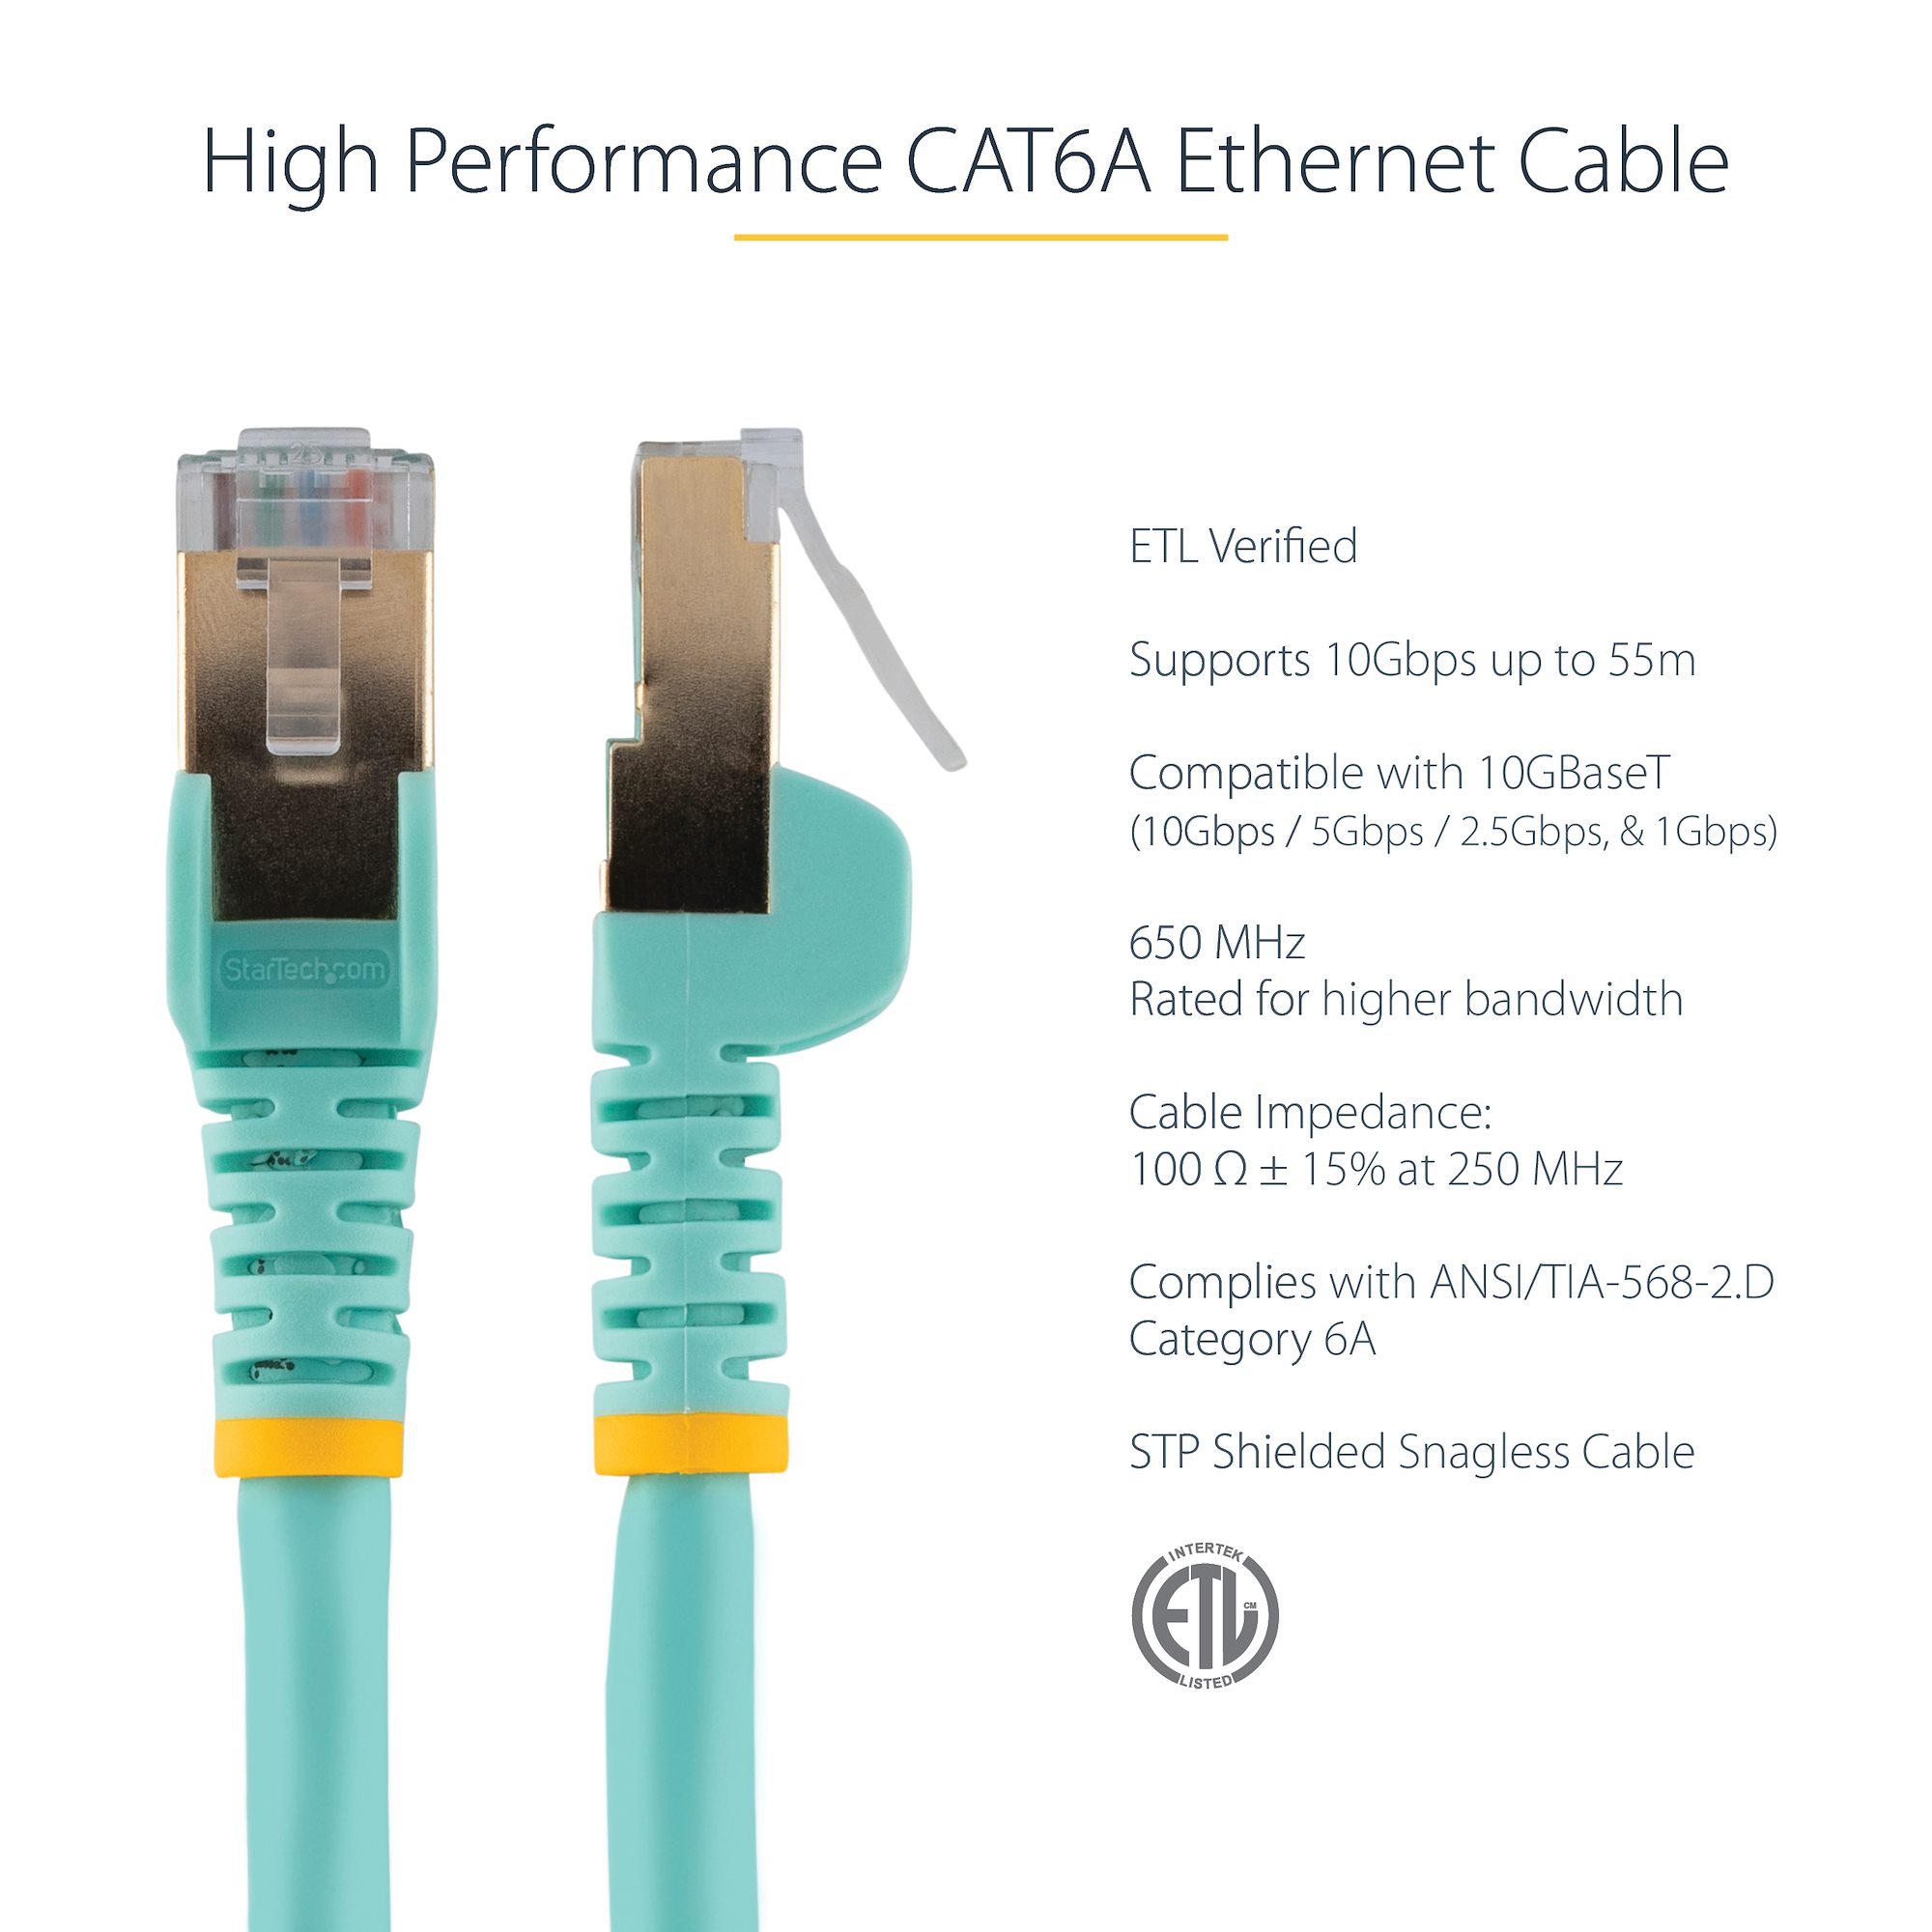 35 ft CAT6a Ethernet Cable - STP Black (C6ASPAT35BK) - Cat 6a Cables, Cables